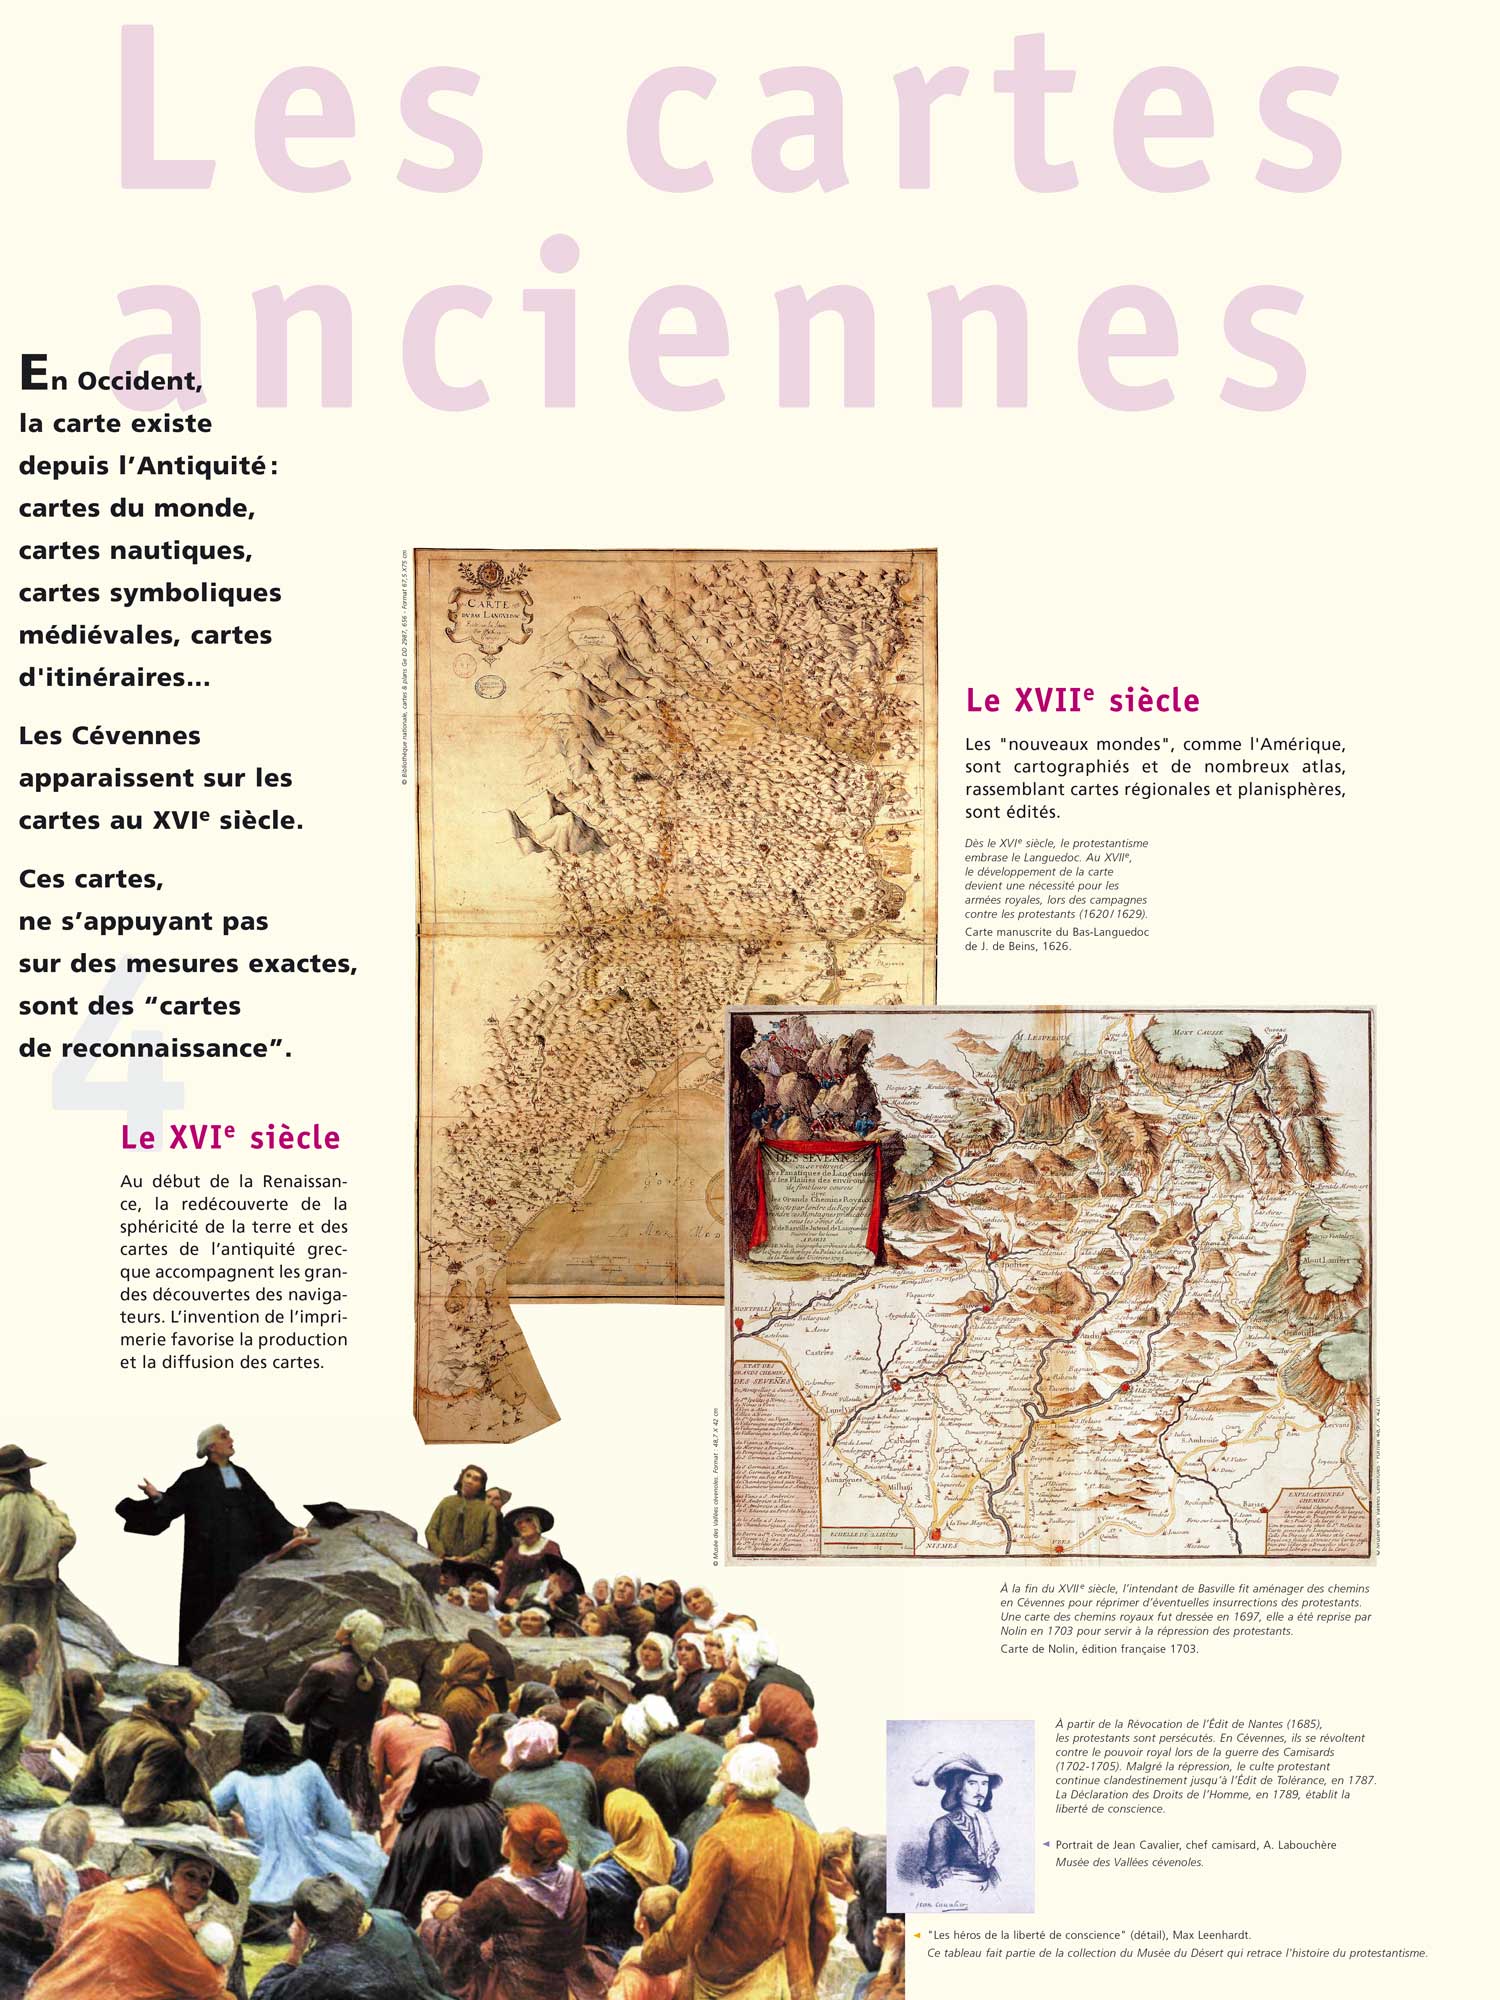 Les cartes anciennes des Cevennes